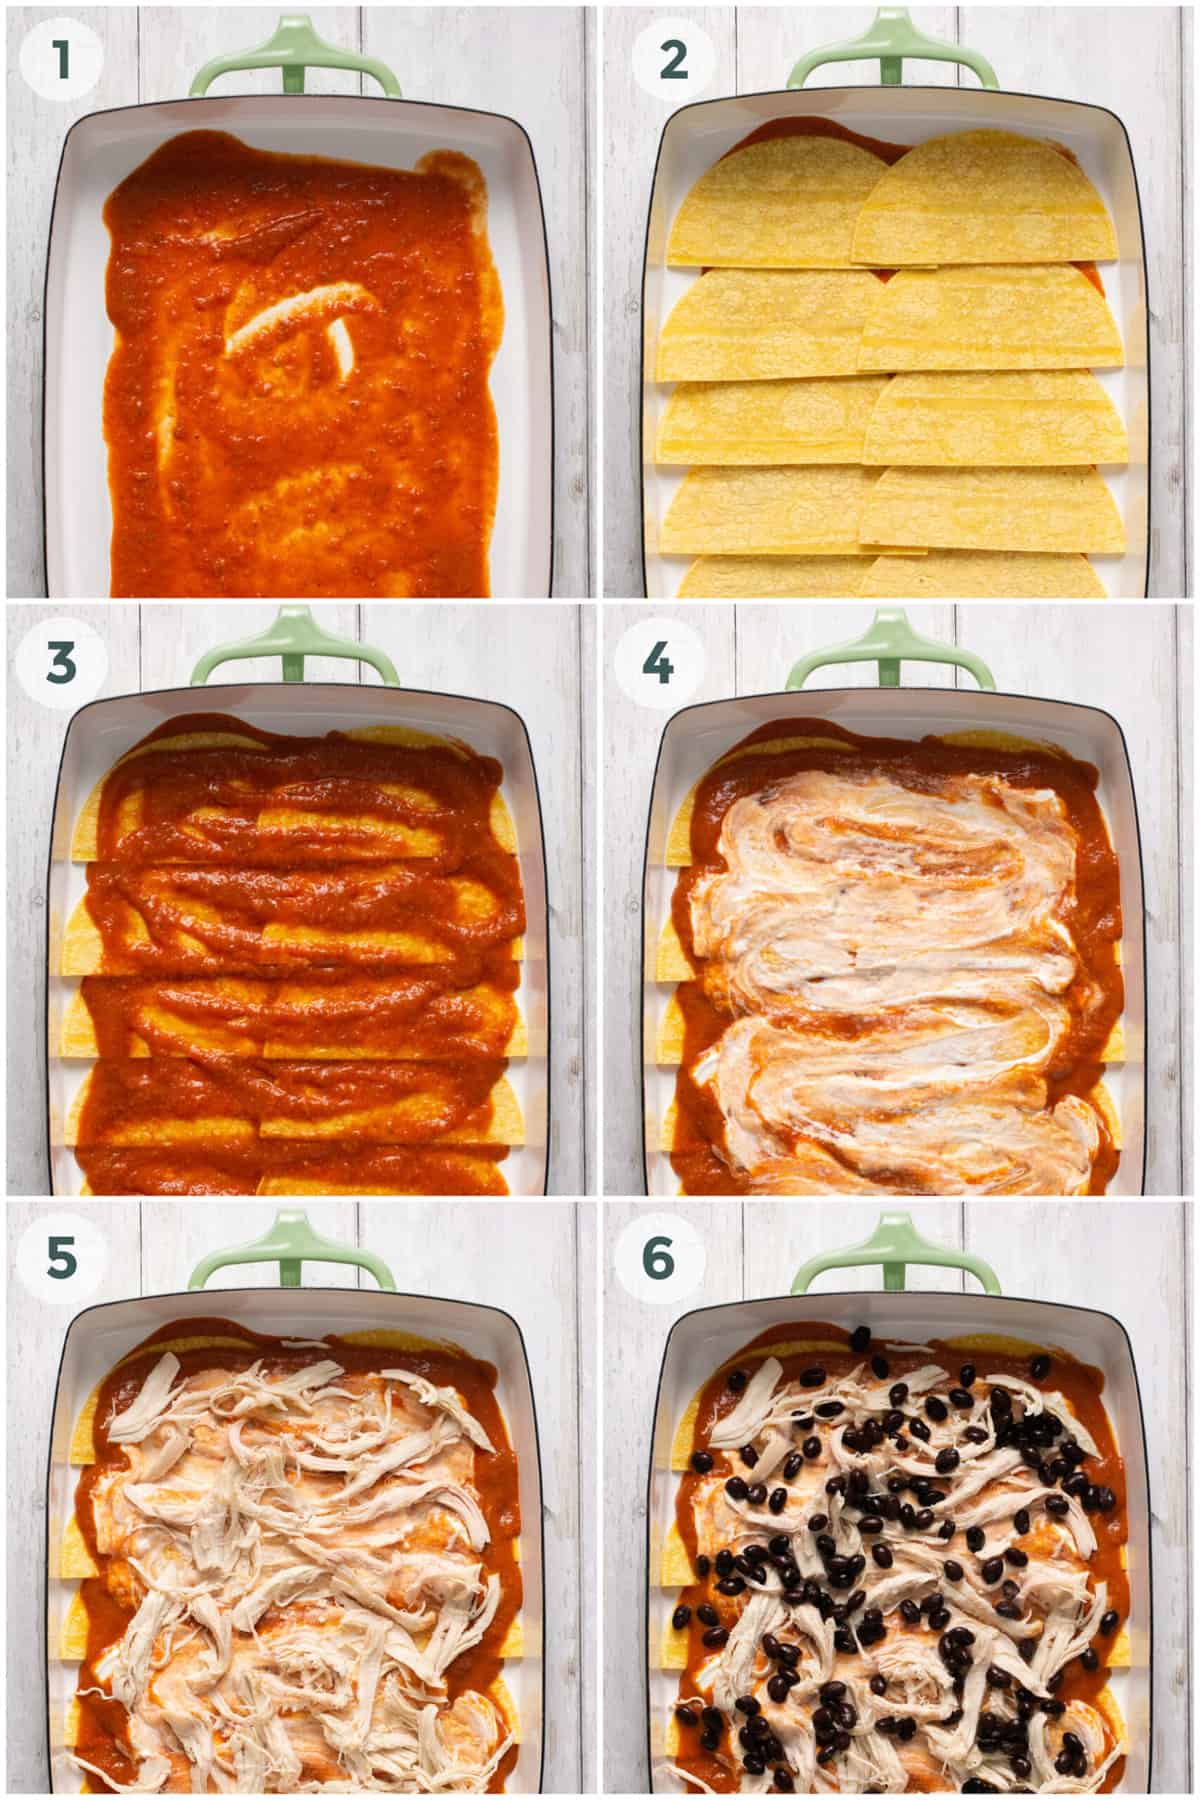 steps 1-6 of preparing chicken enchilada casserole